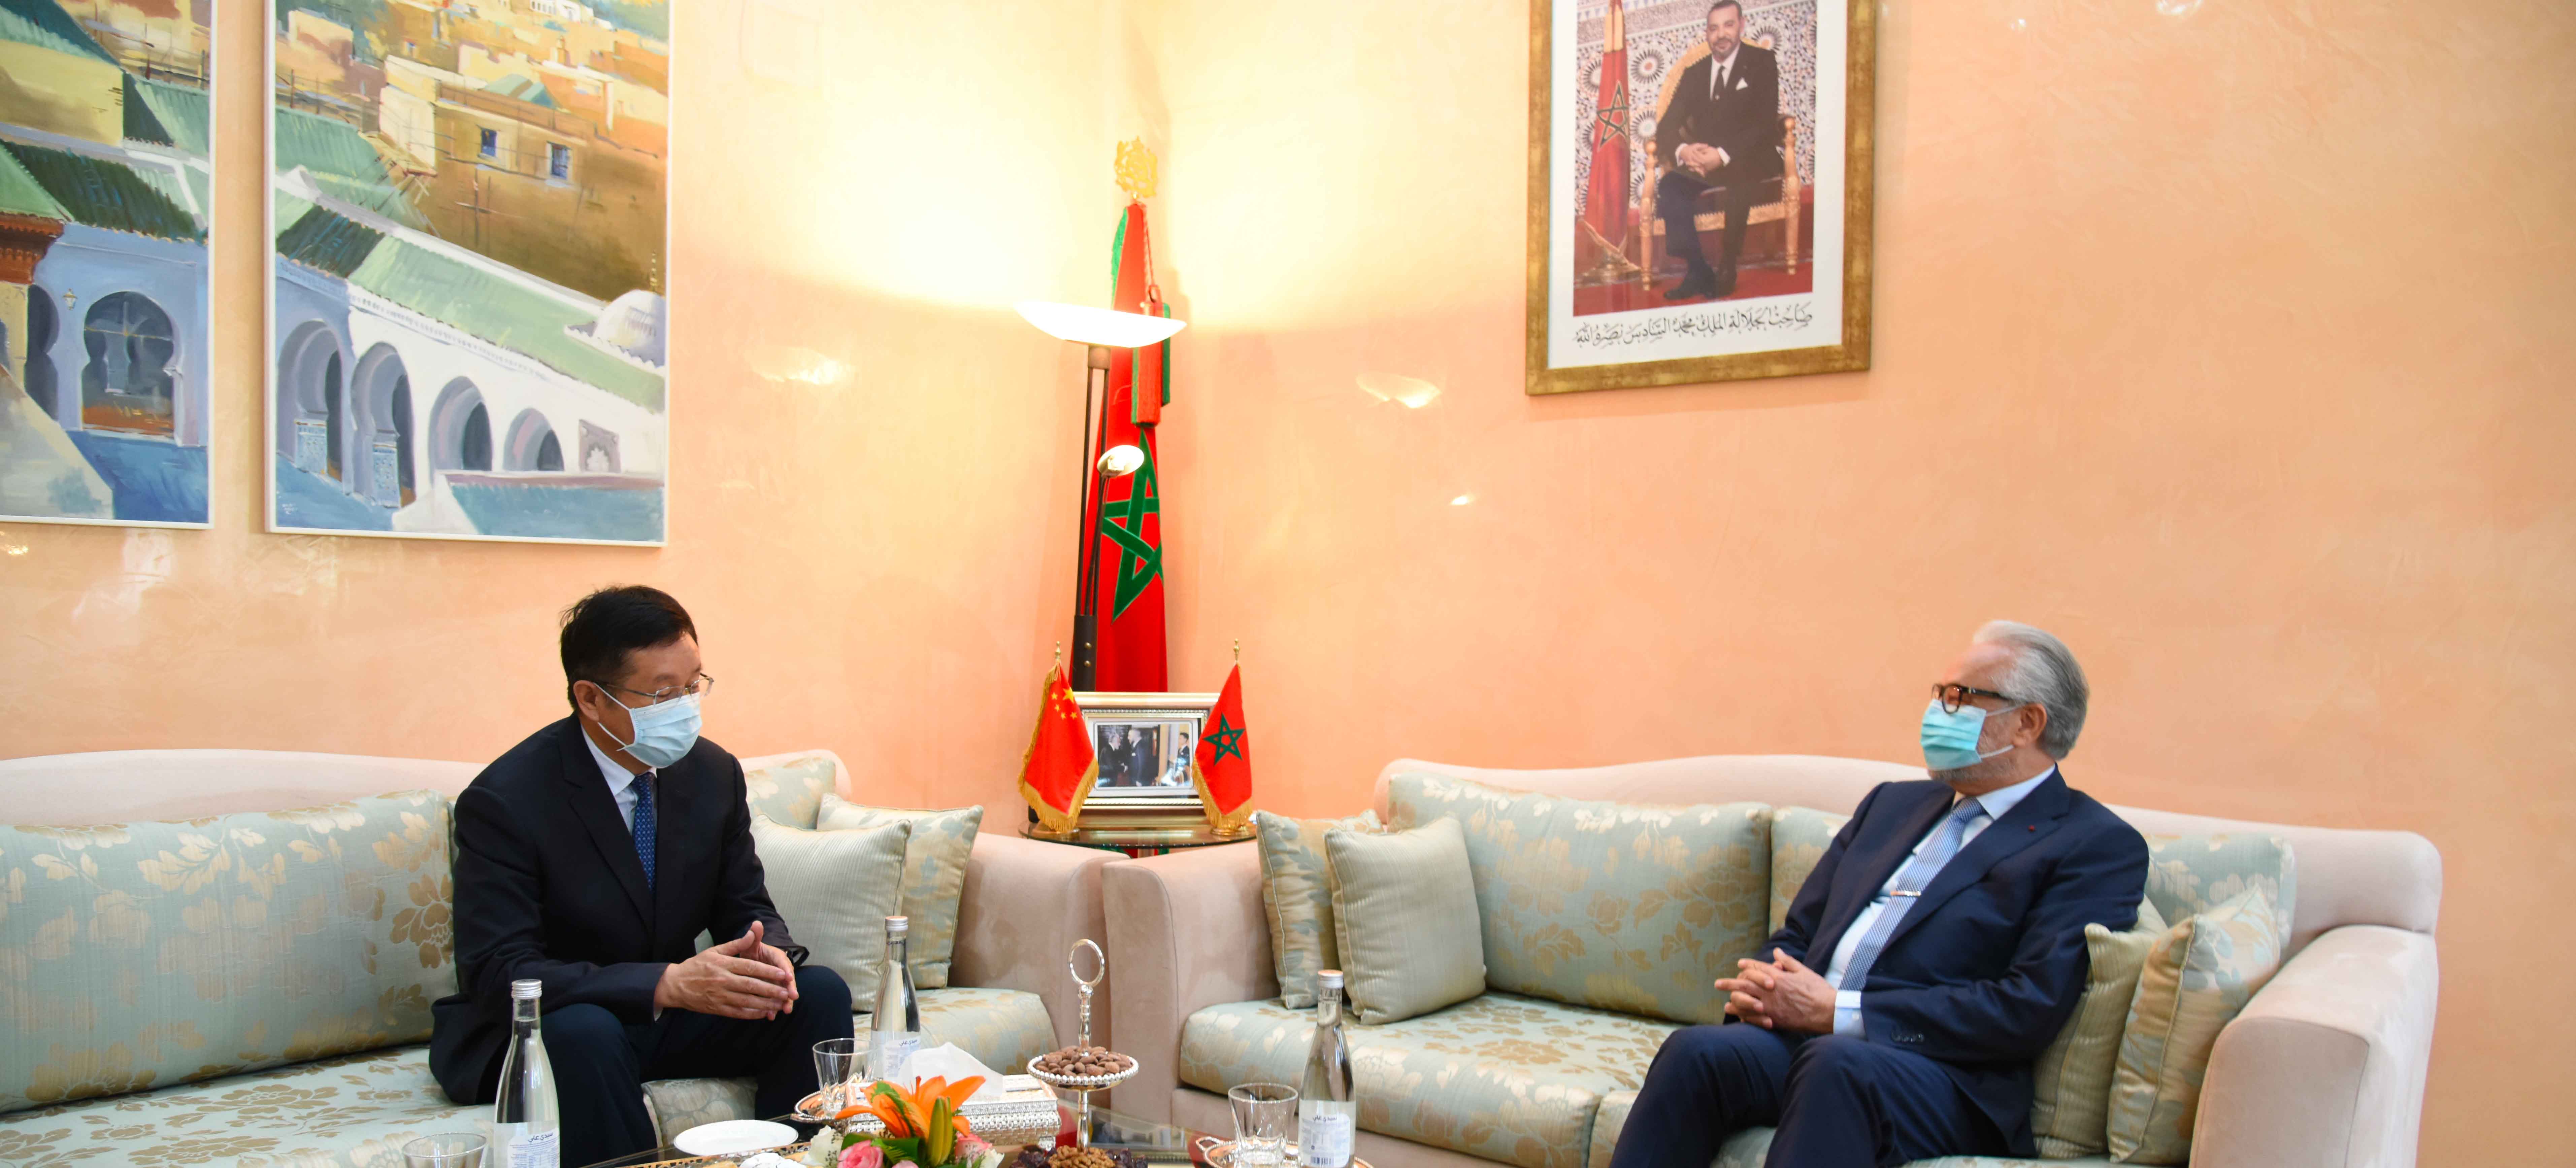 السيد الوزير محمد حجوي، الأمين العام للحكومة، يستقبل سعادة السيد شانغلين لي، السفير الجديد للصين في المملكة المغربية